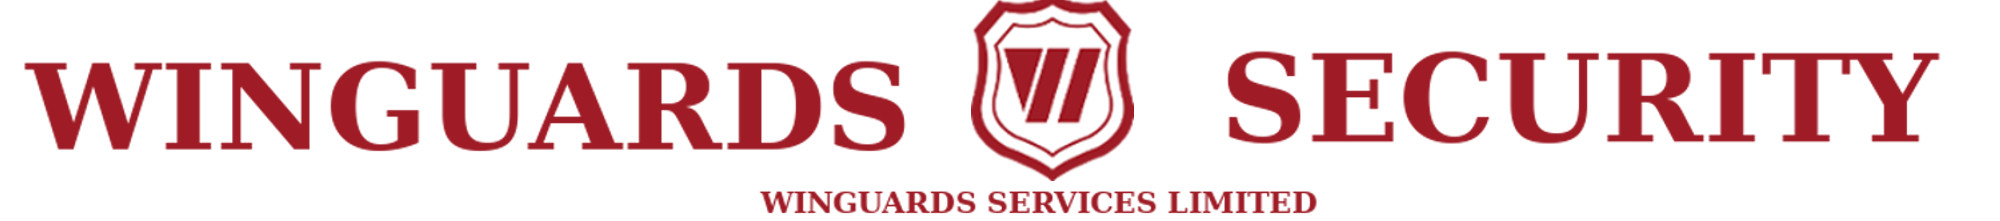 WINGURDS SERVICES LTD